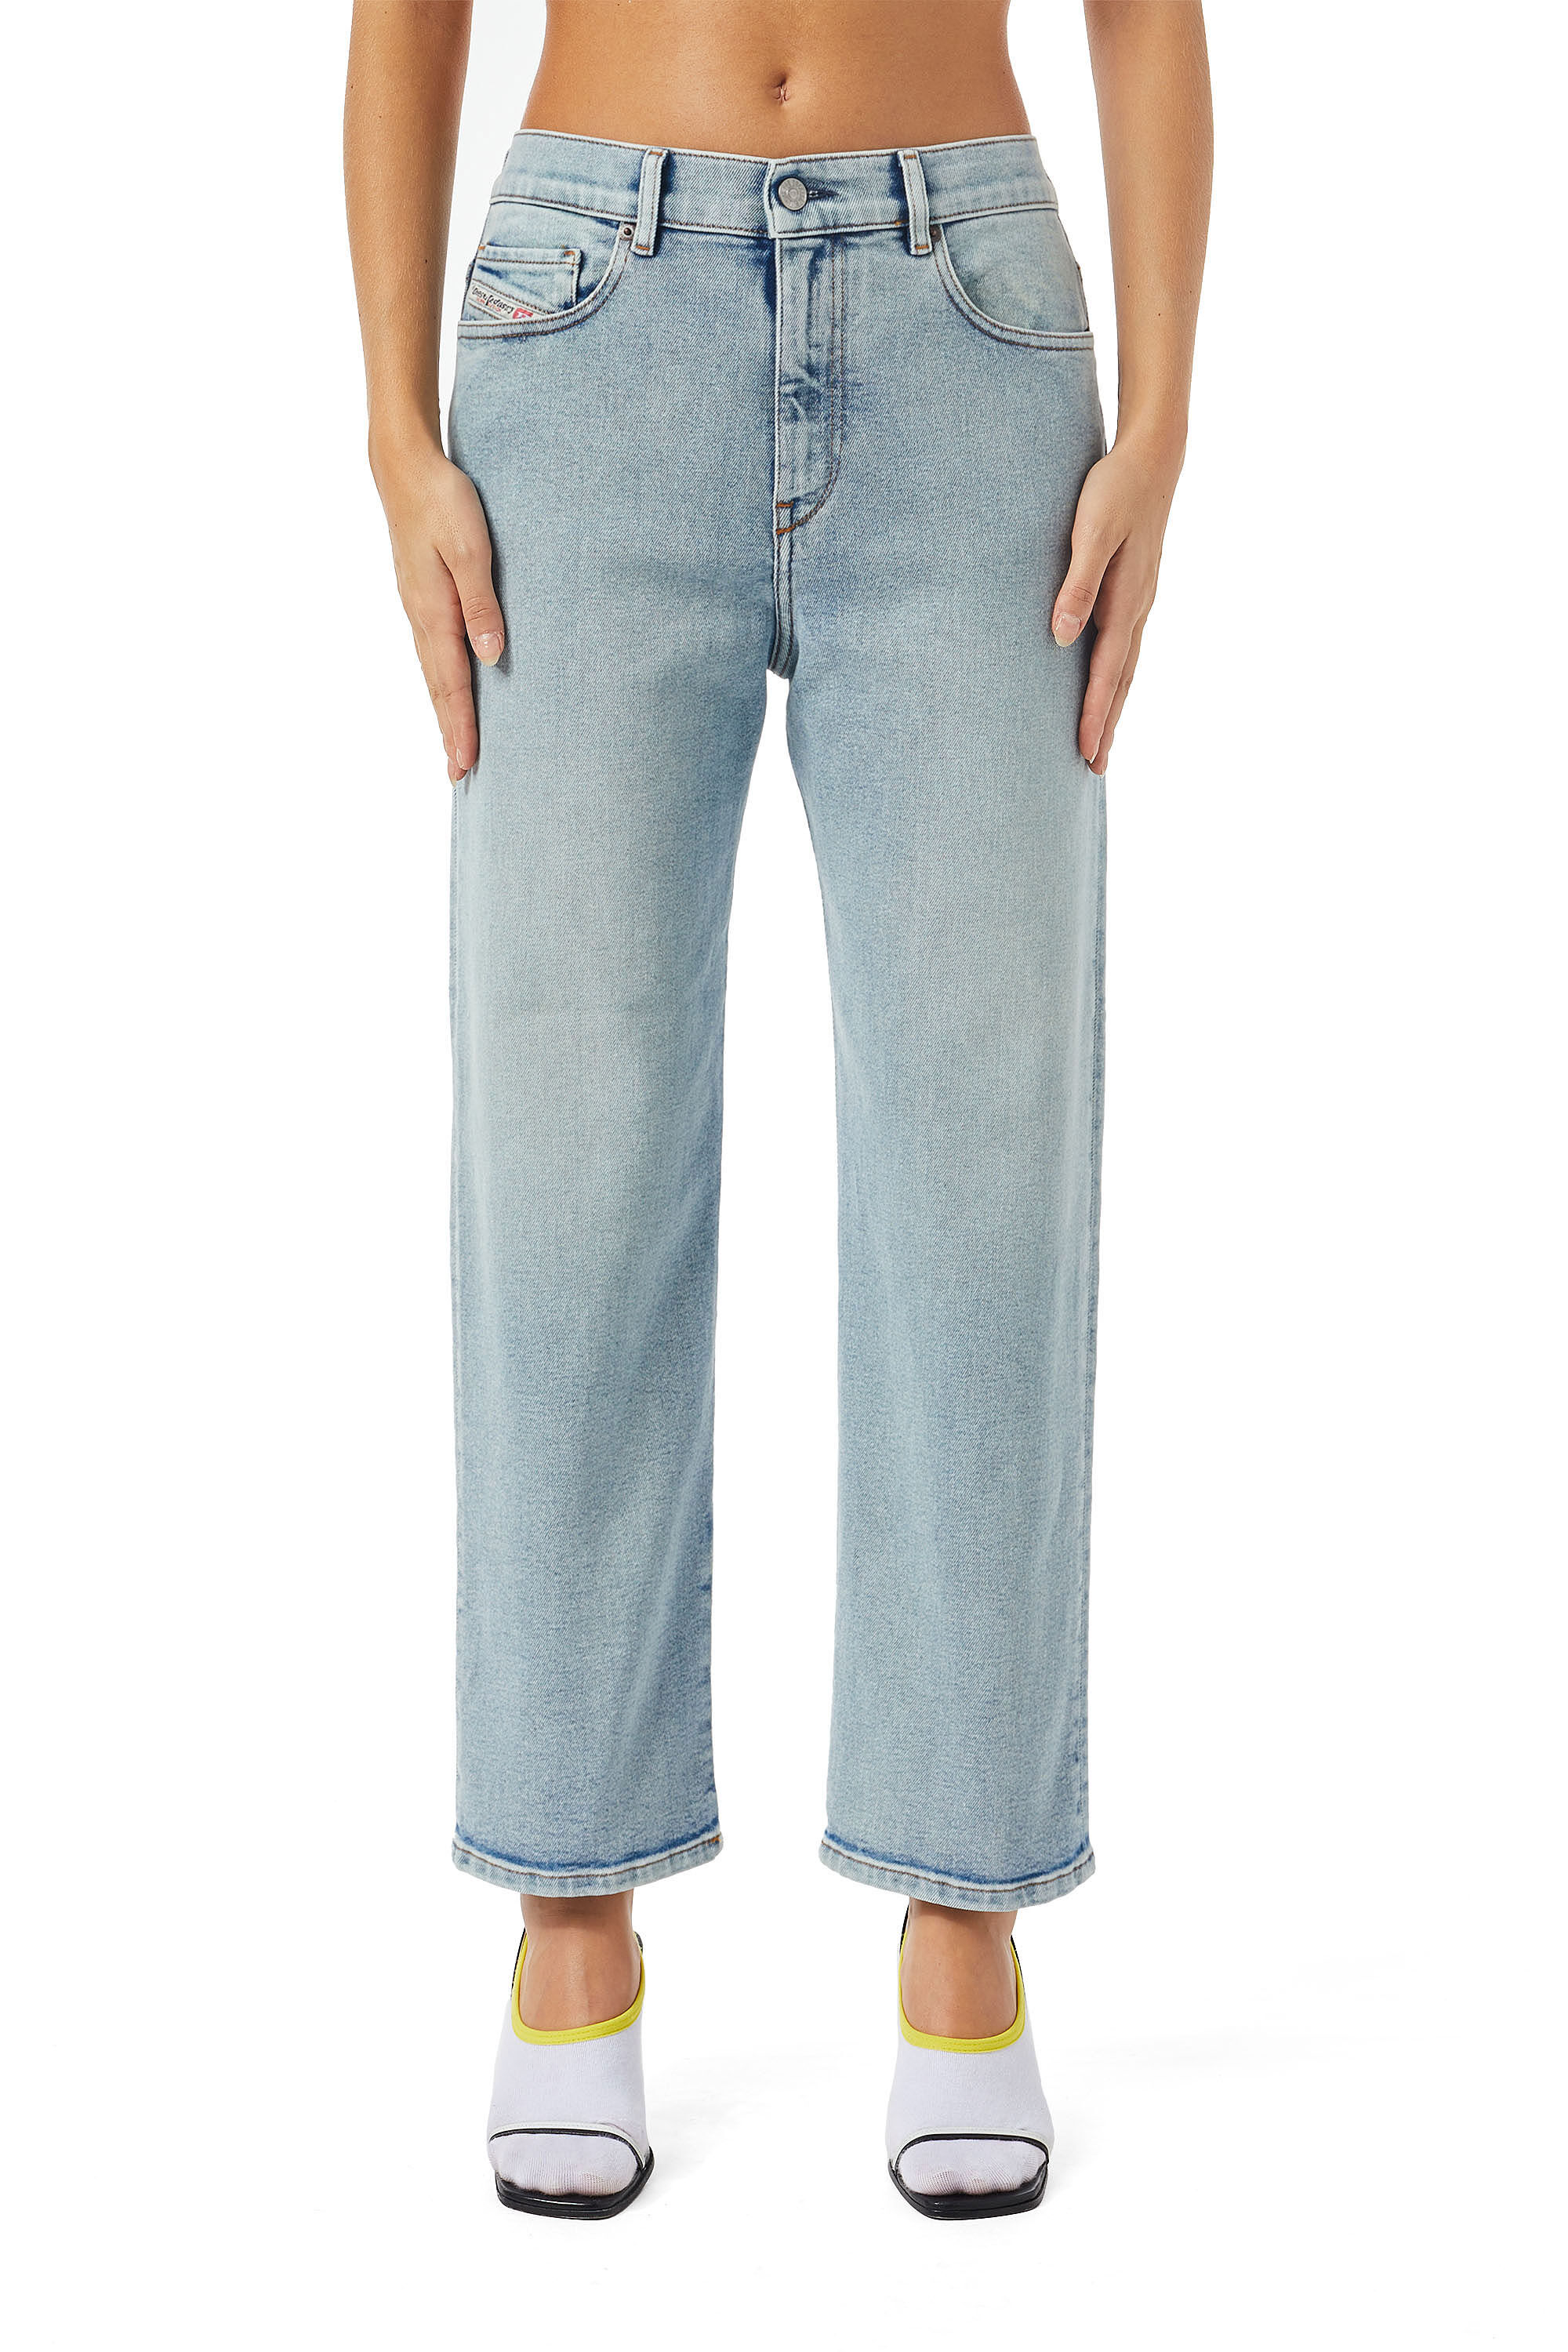 ONLY Slouchy jeans Rabatt 68 % DAMEN Jeans Slouchy jeans Basisch Grün XL 